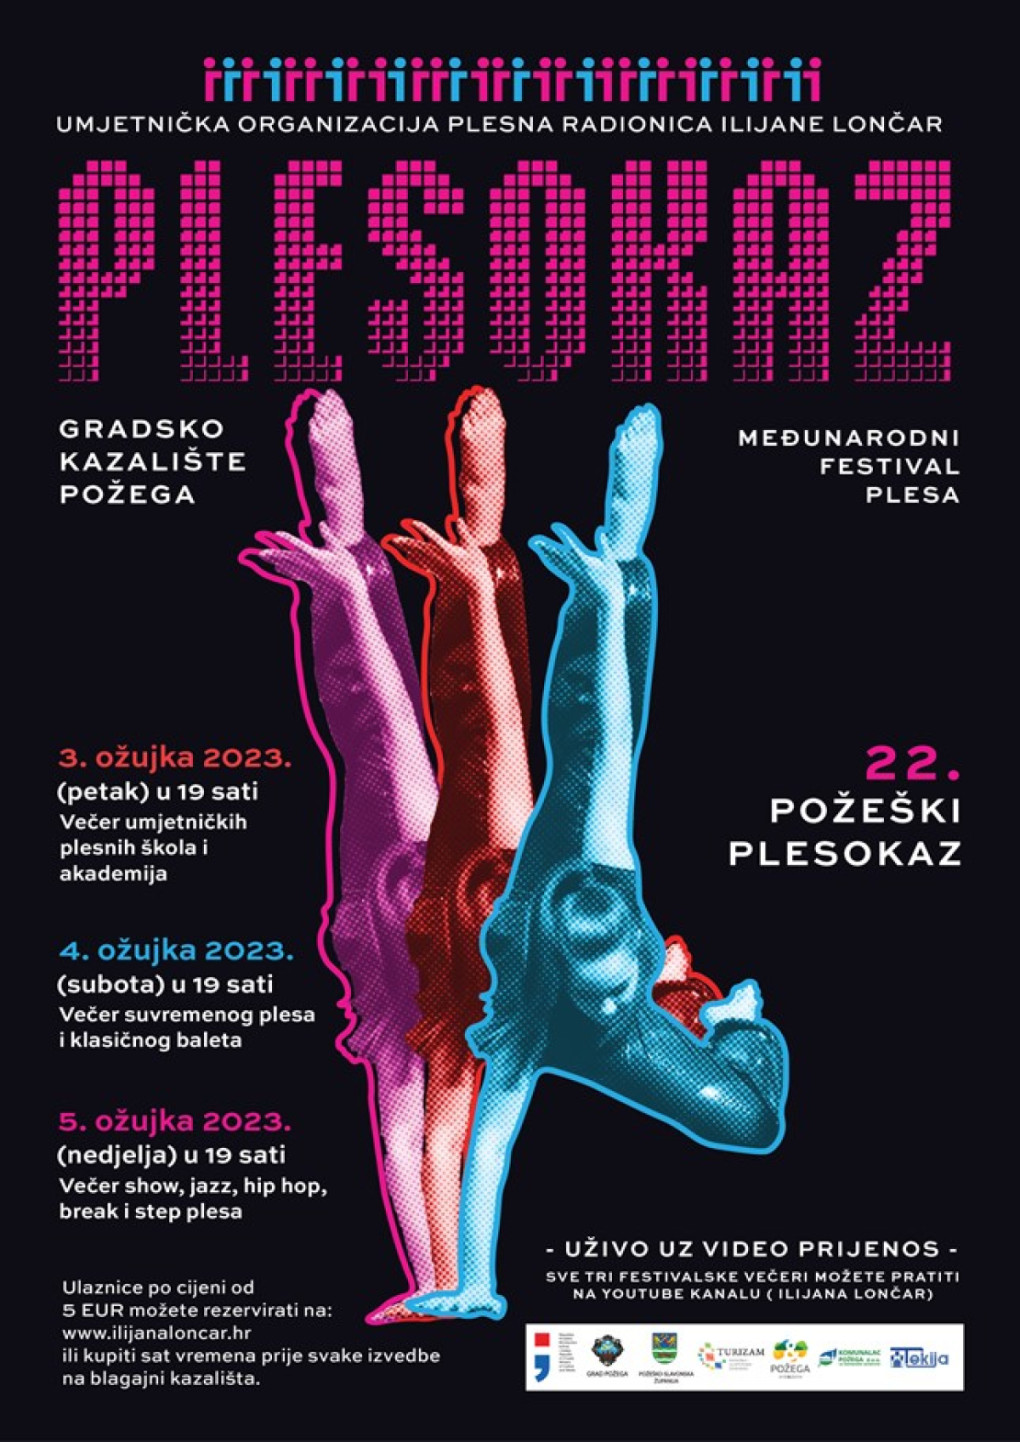 22. Požeški Plesokaz - Međunarodni festival plesa